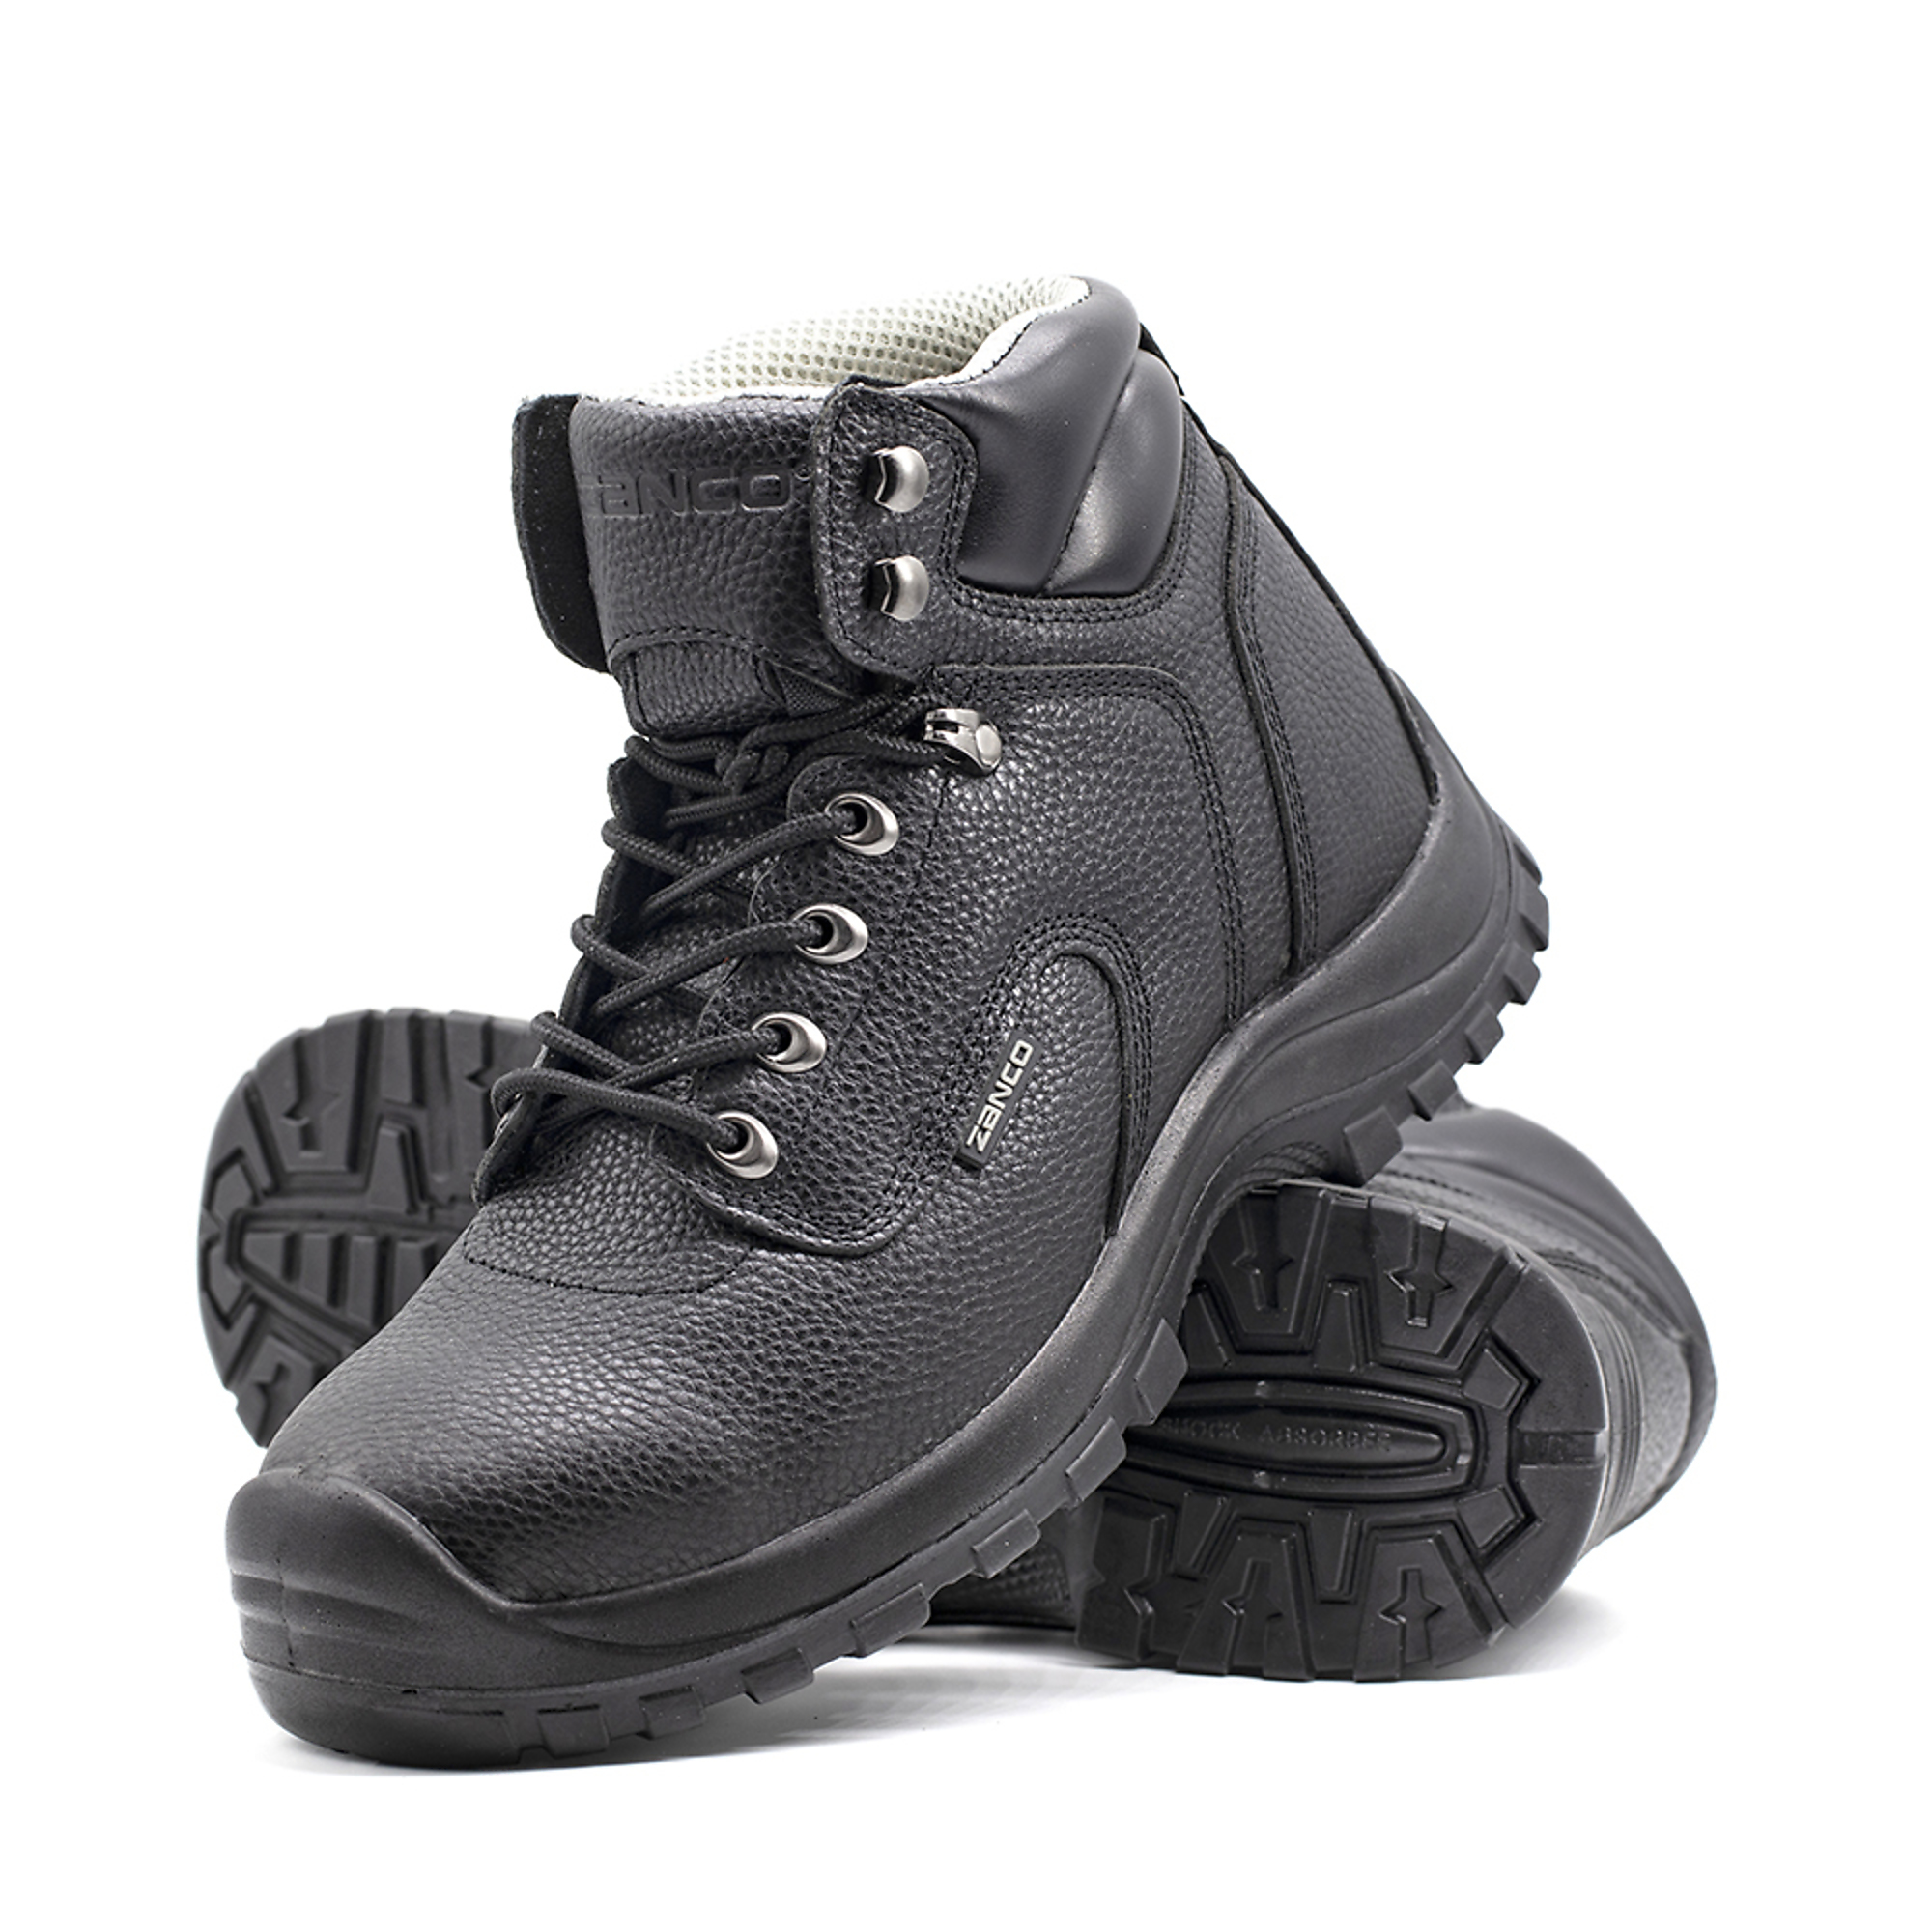 Zanco, Men's Waterproof,Steel toe,EH,Safety boots, Size 9, Width Medium, Color BLACK, Model 7667-SE-9